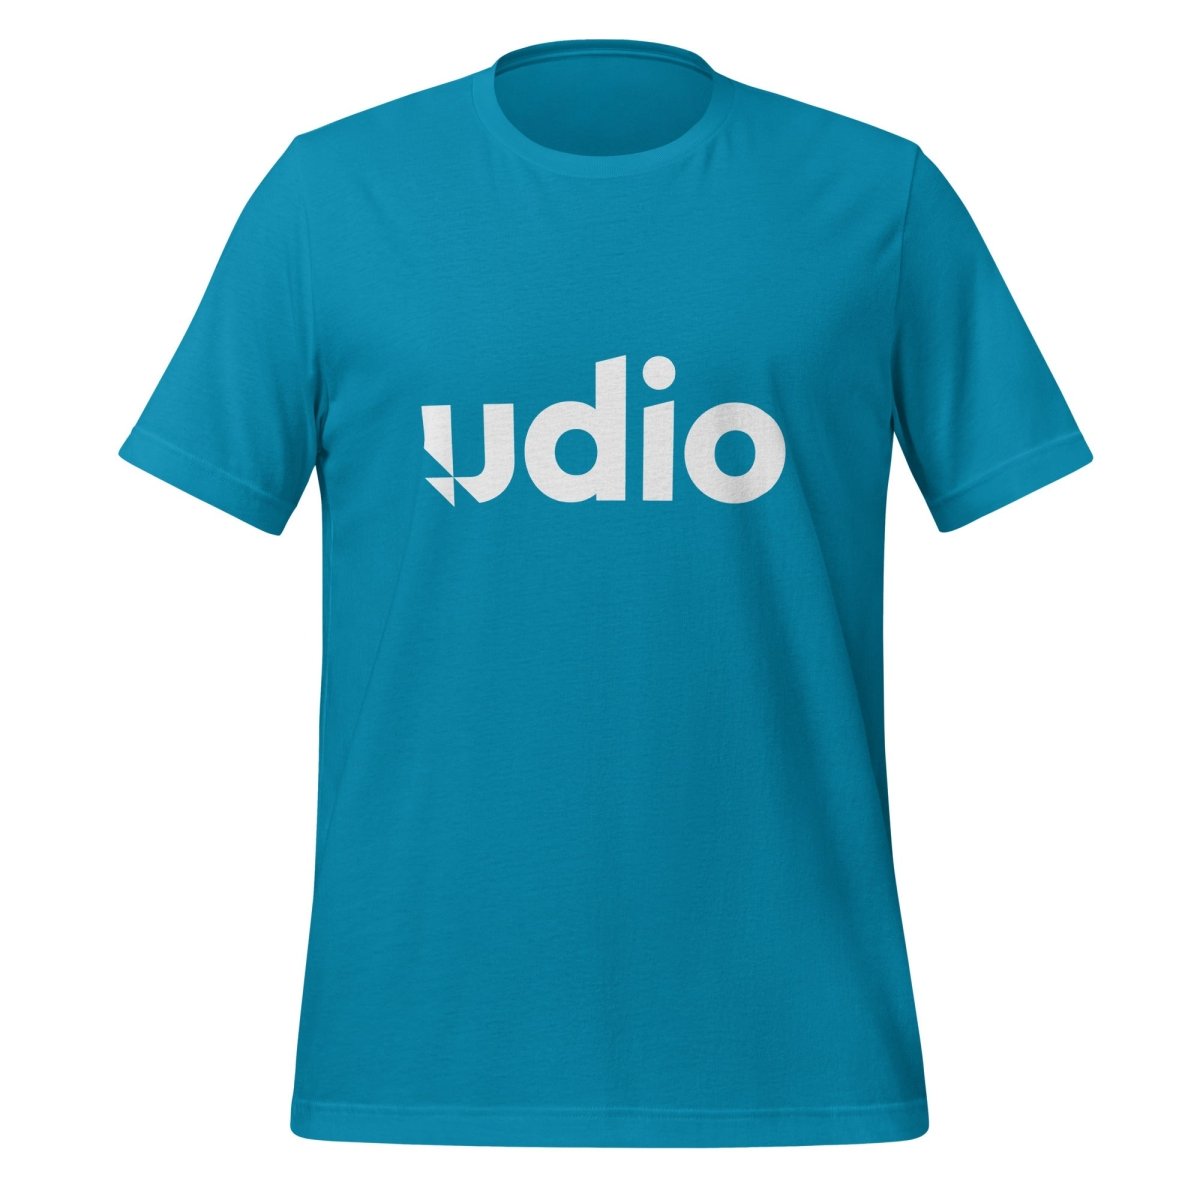 Udio Logo T - Shirt (unisex) - Aqua - AI Store